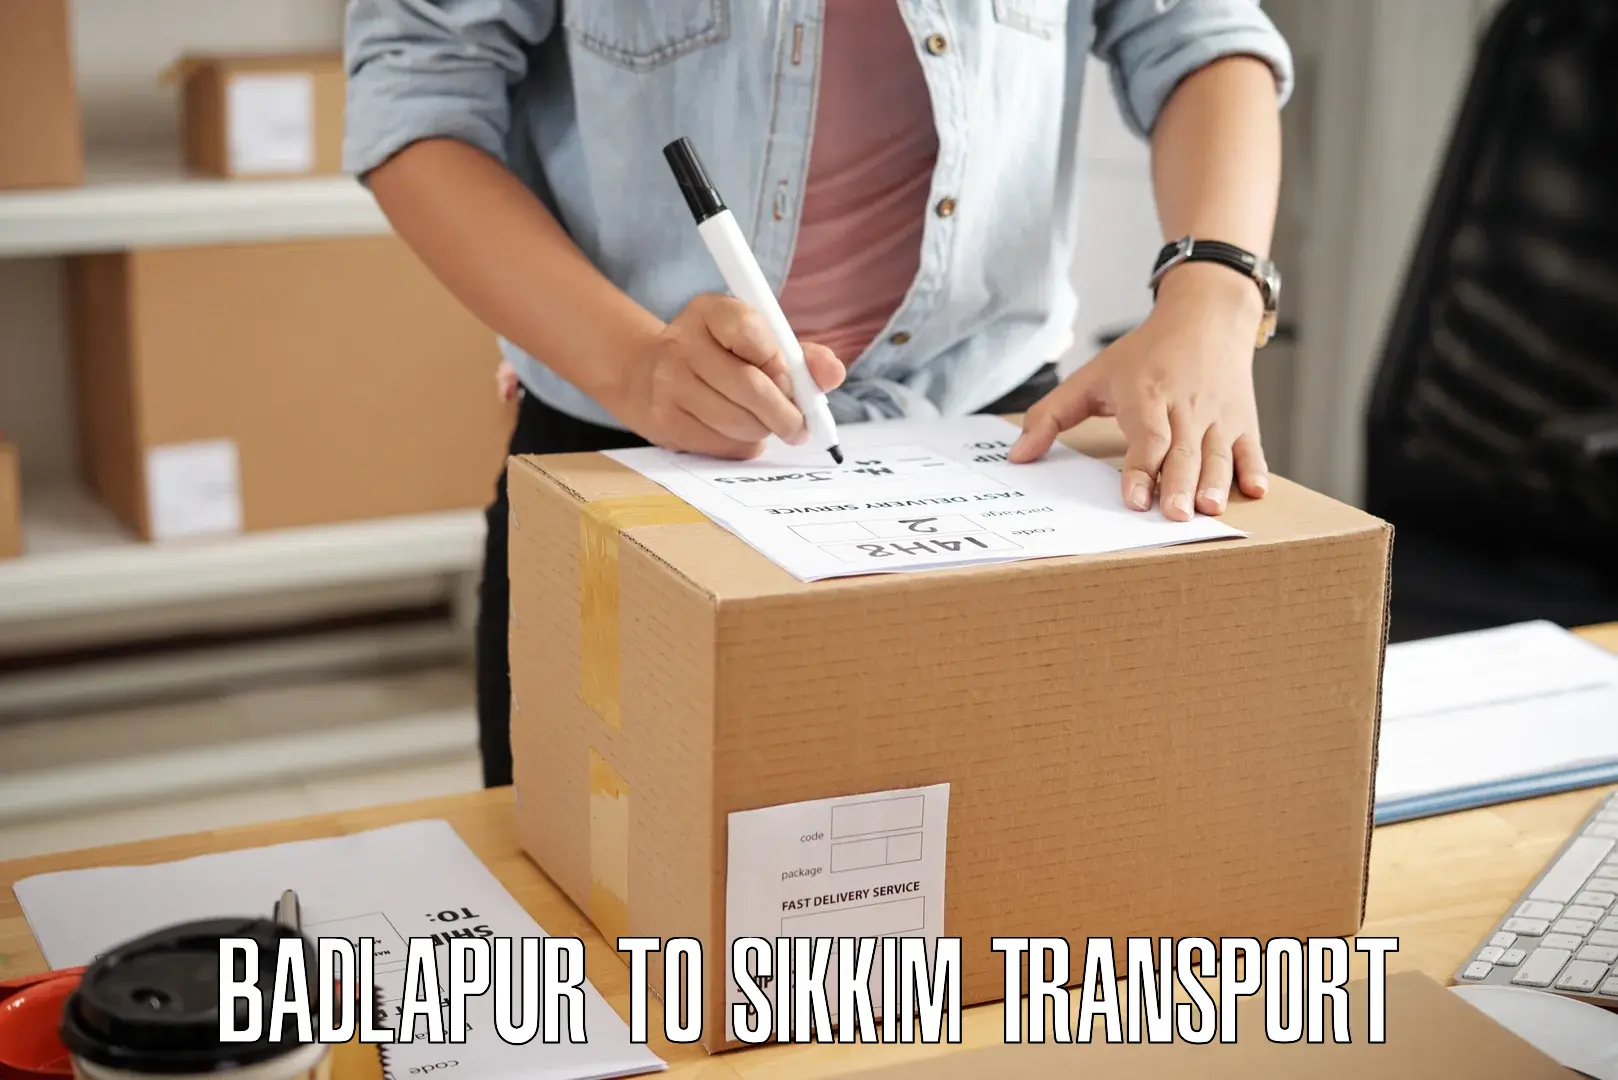 Interstate transport services Badlapur to Sikkim